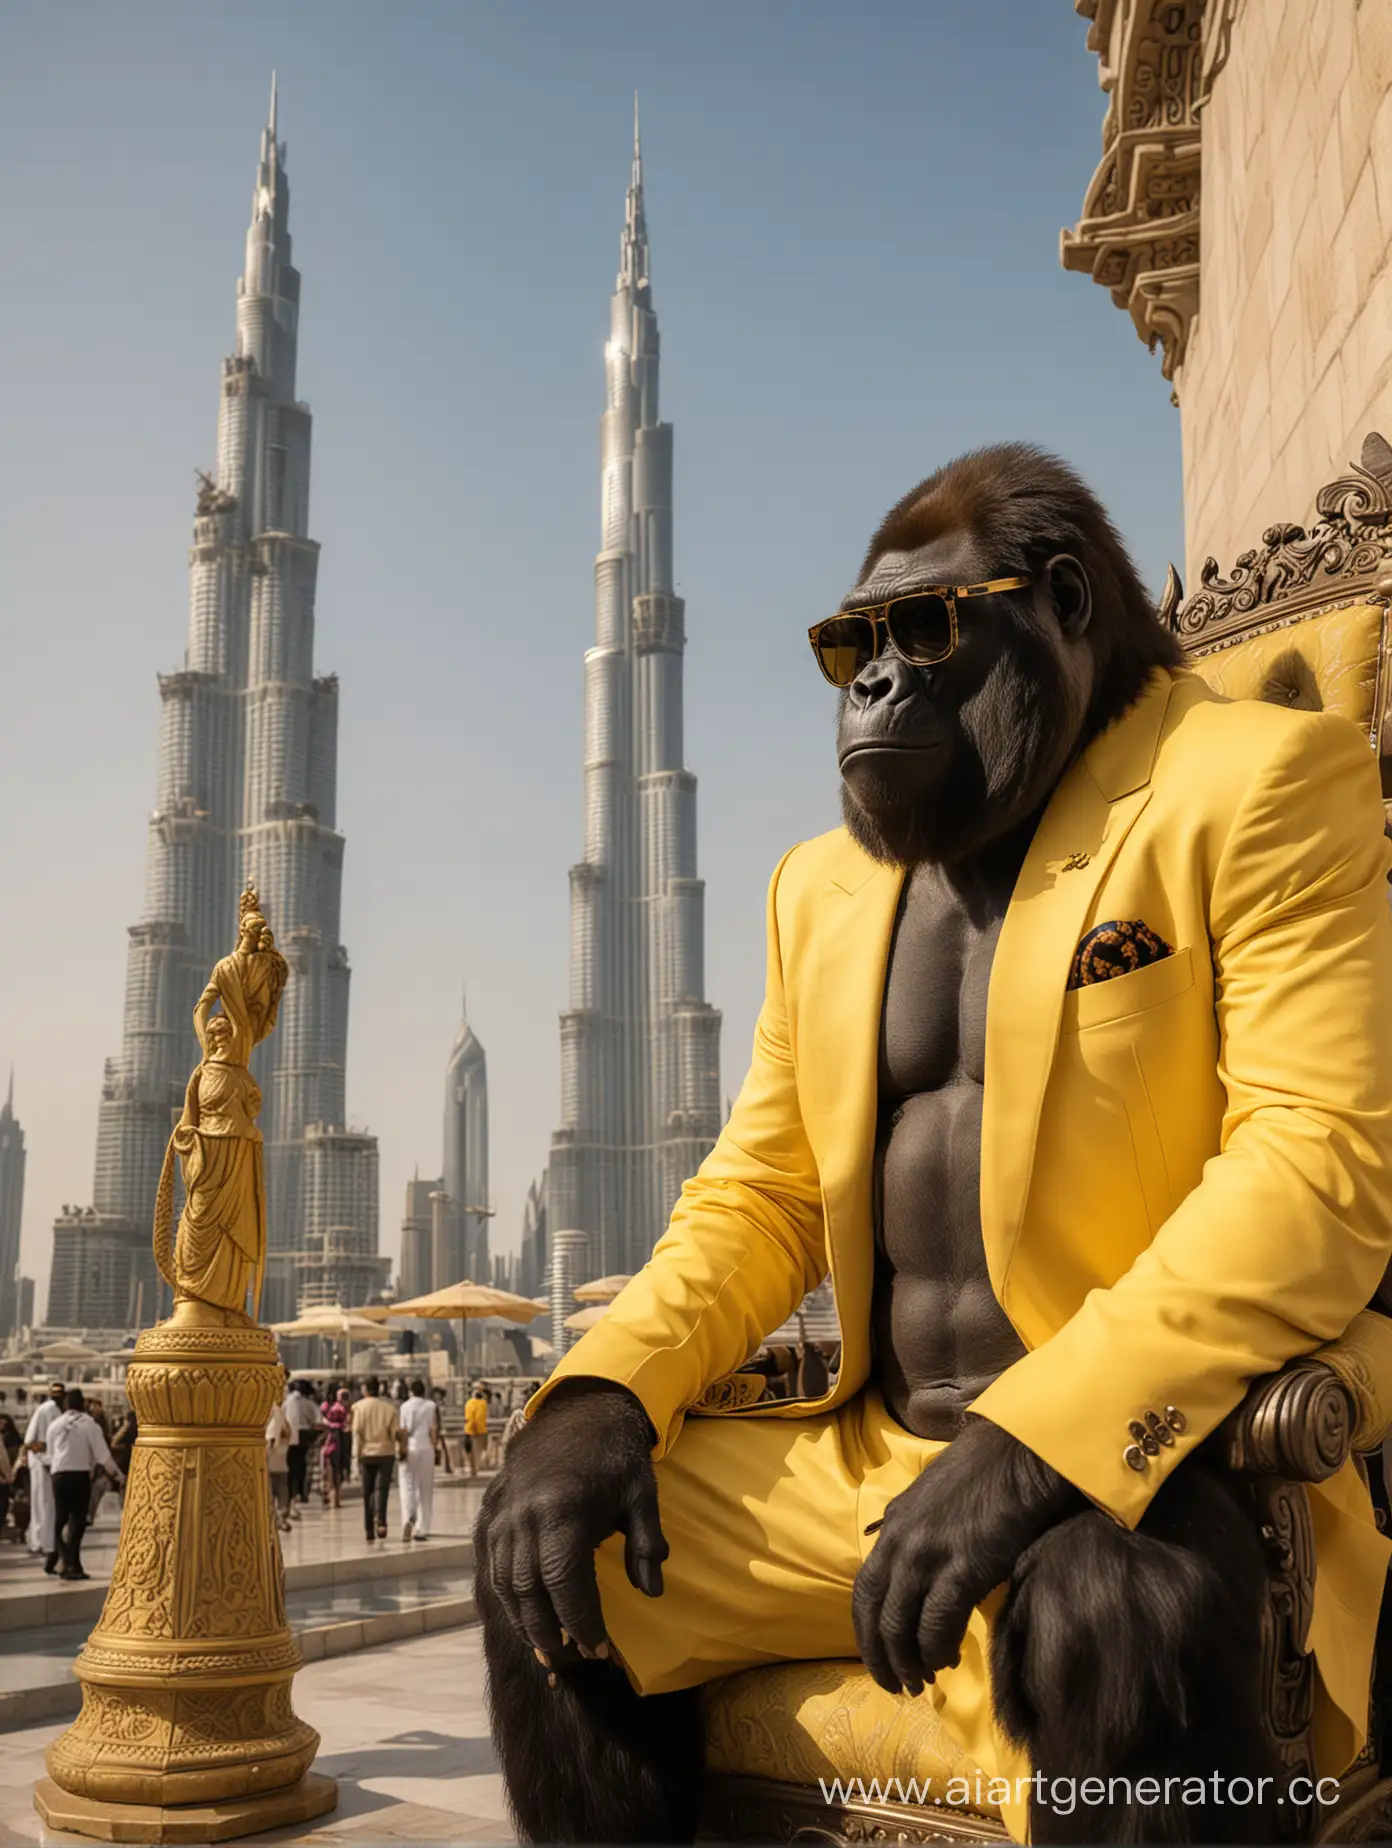 Большая черная горилла в солнцезащитных очках и желтом классическом костюме сидит на троне как шейх, неподалеку стоит ламба желтого цвета, а в далеке виднеется бурдж-халифа